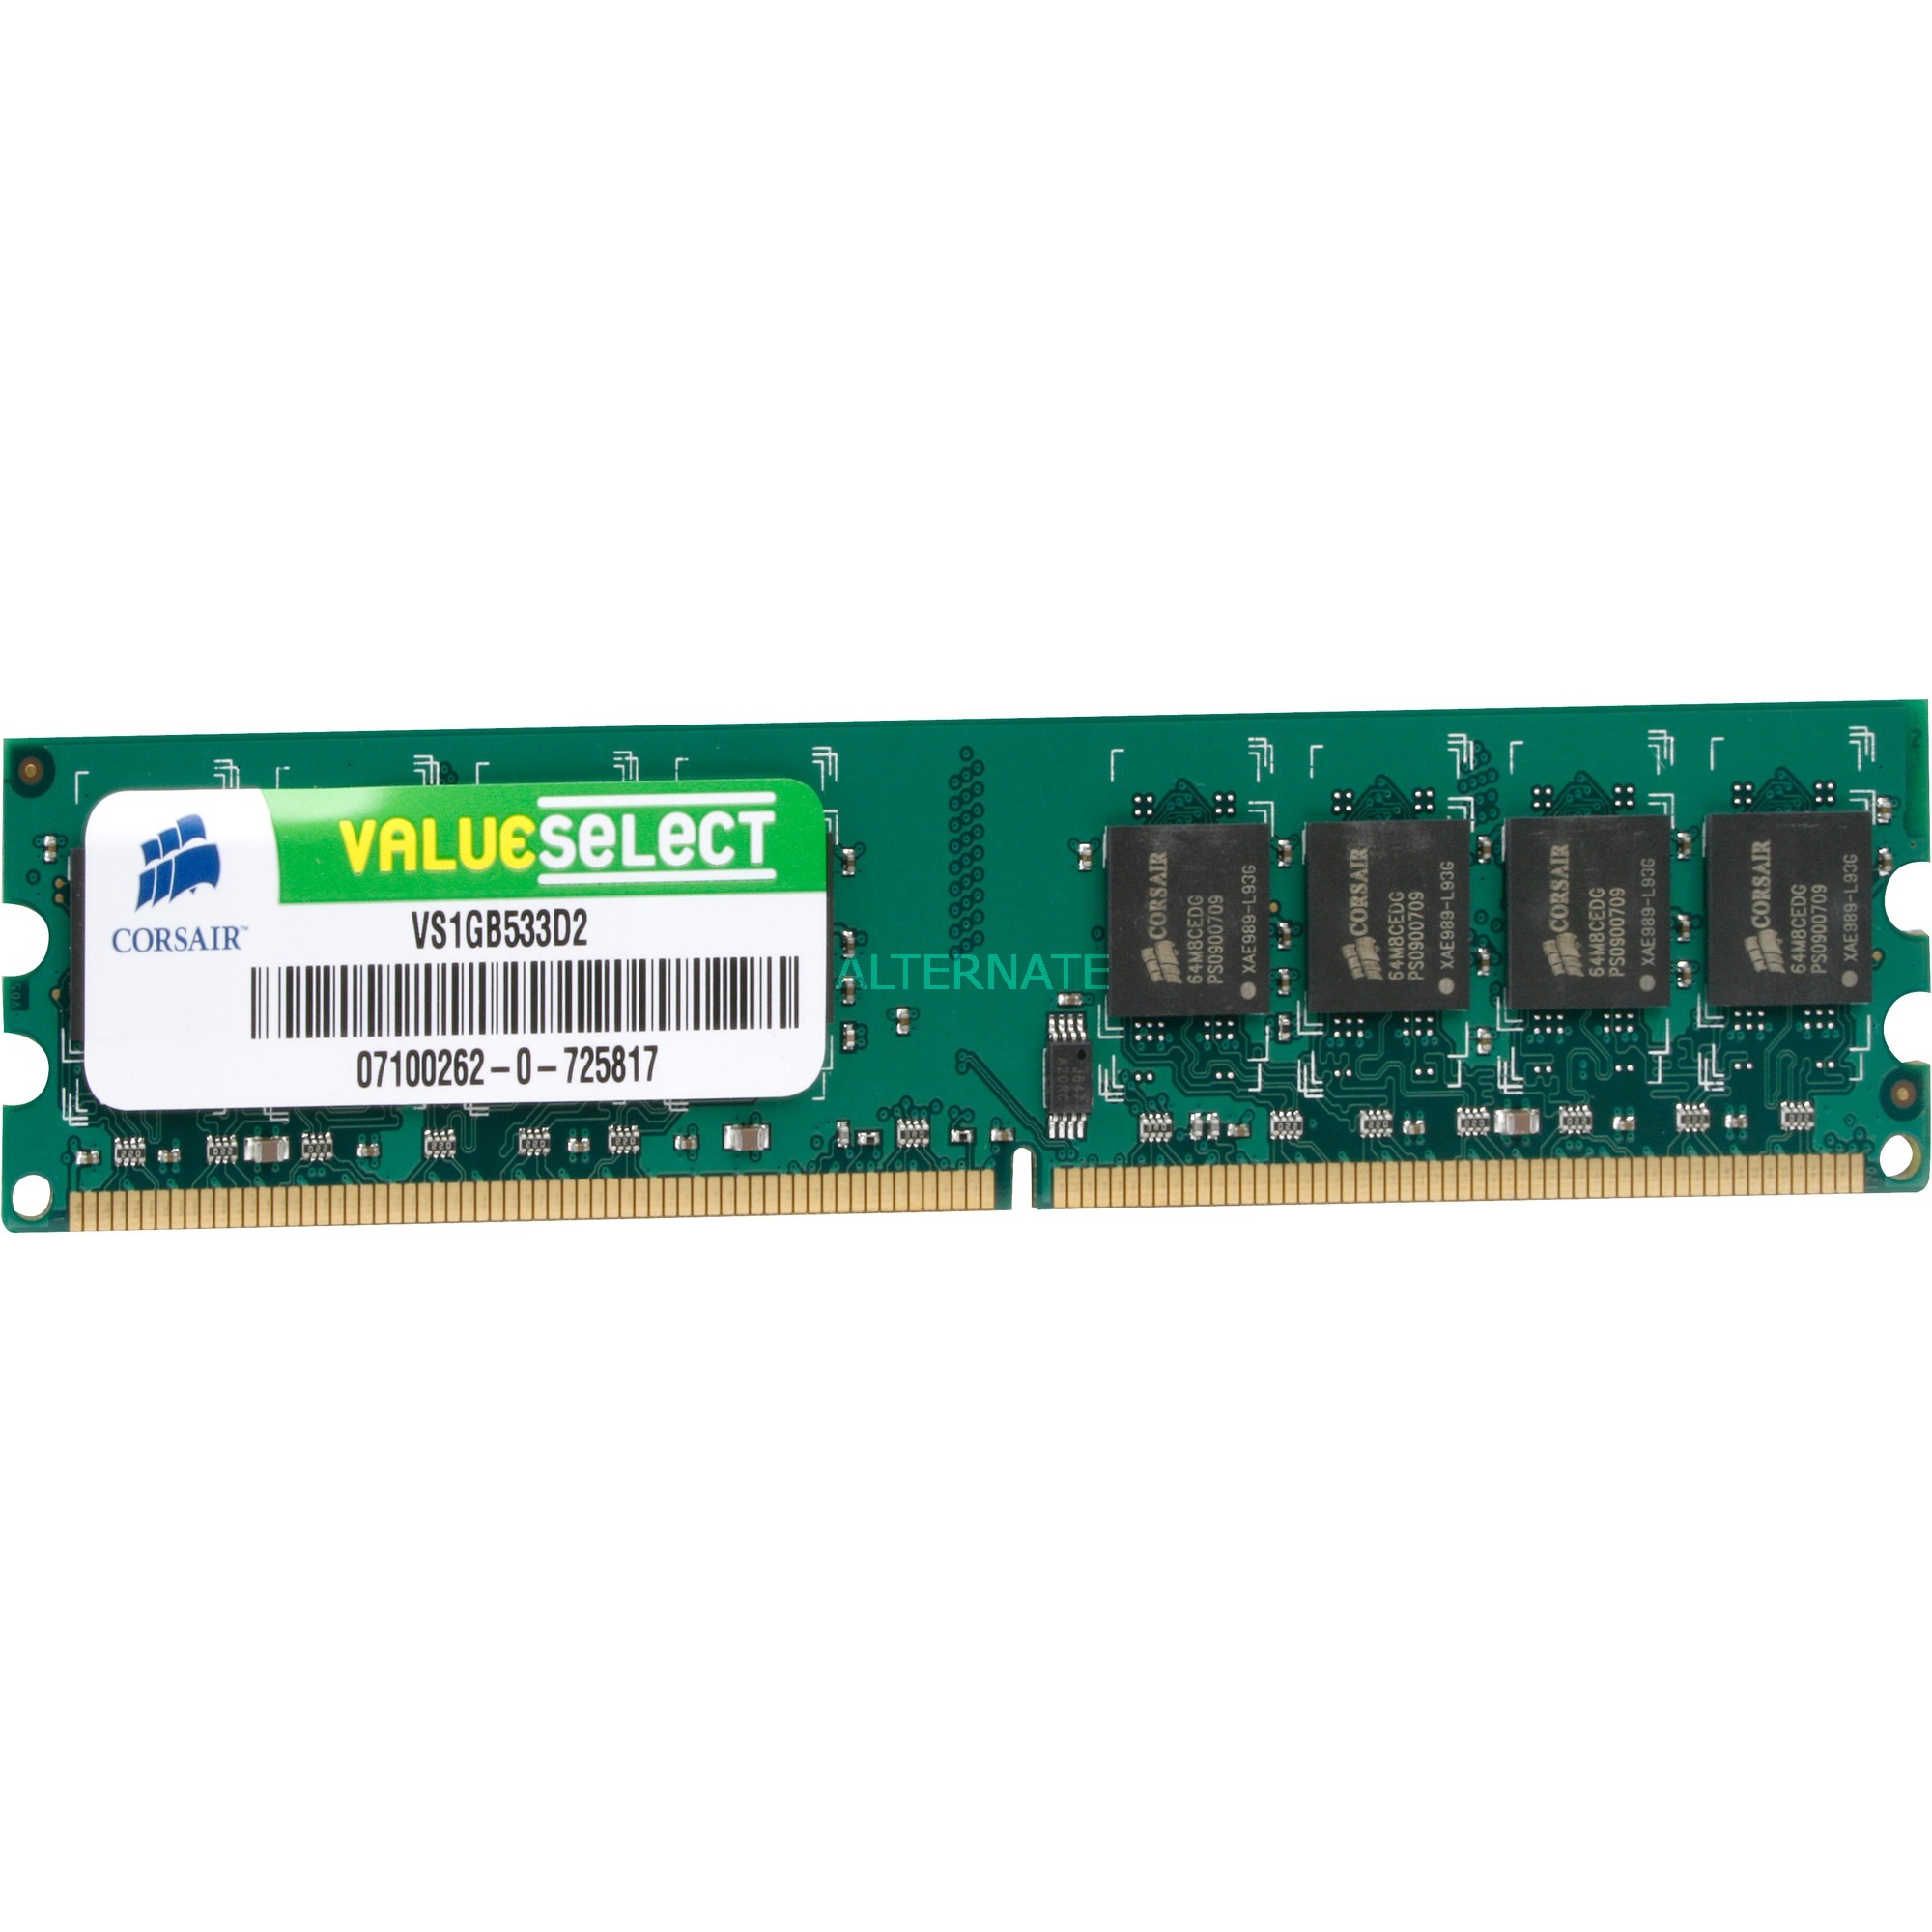 1GB DDR2 SDRAM DIMM 1GB DDR2 533Mhz moduł pamięci, Pamięc operacyjna